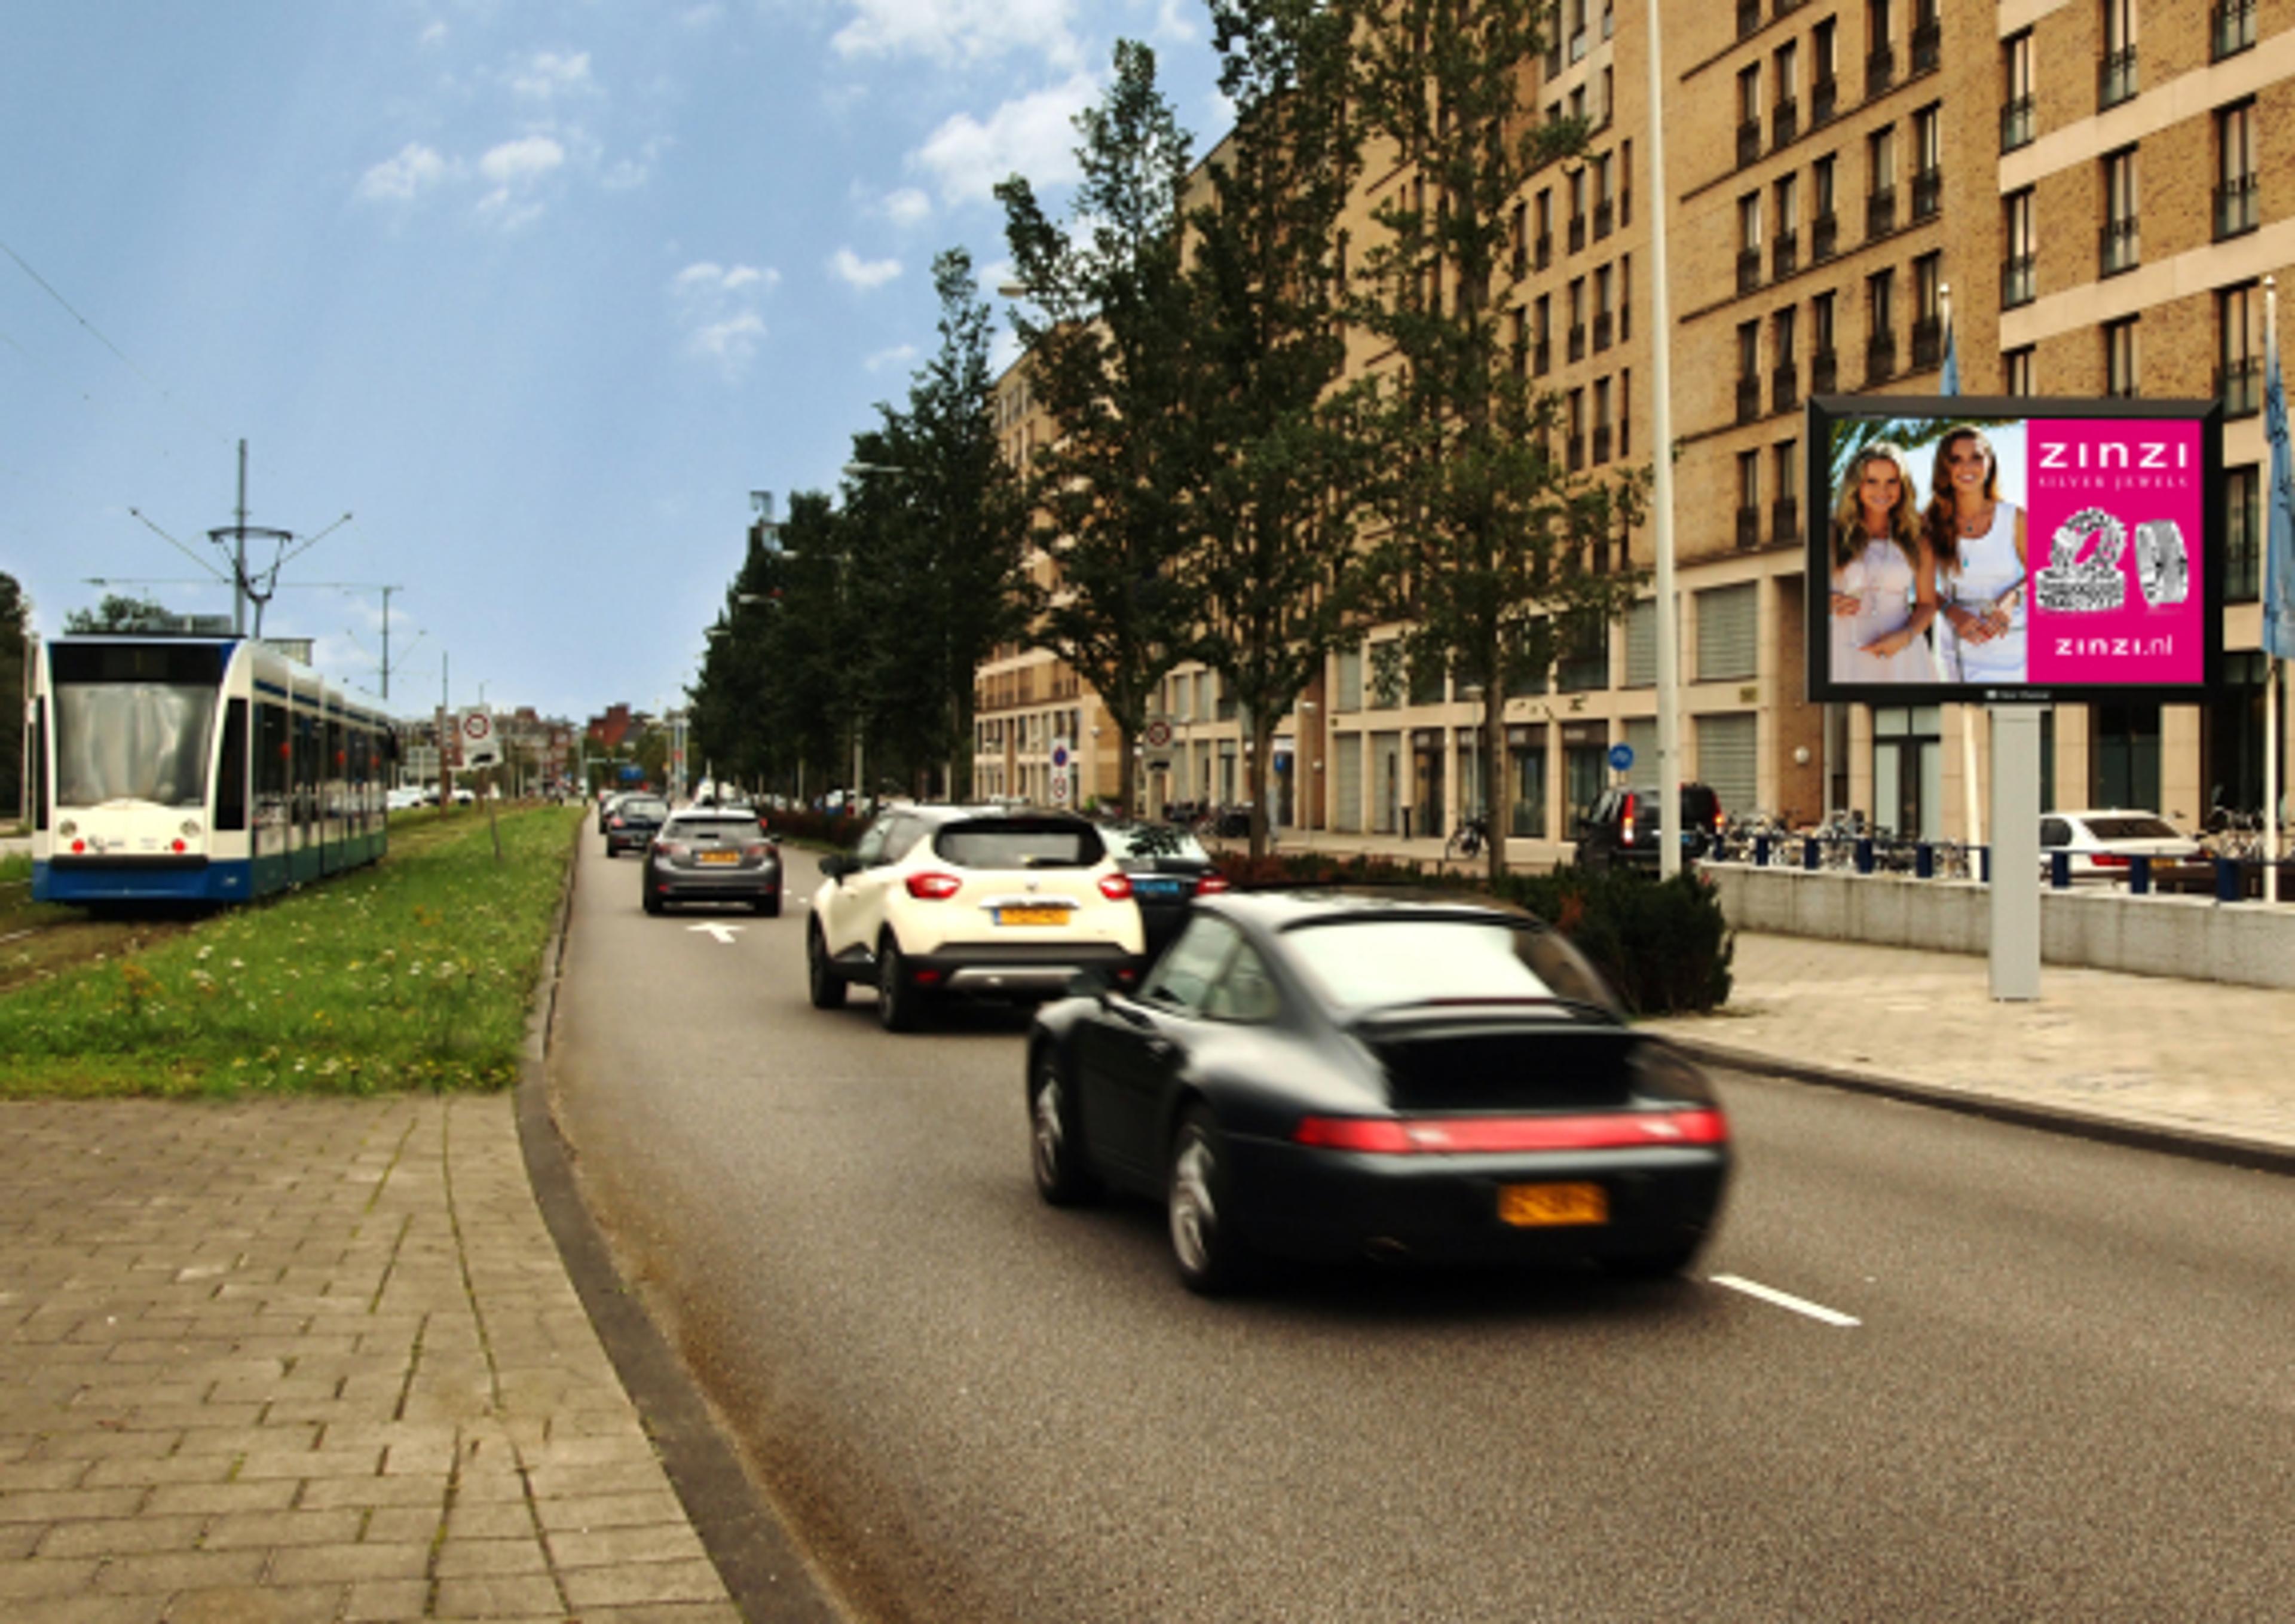 Nieuw: 'Digital Billboard' Clear Channel Hillenaar langs openbare weg in Amsterdam